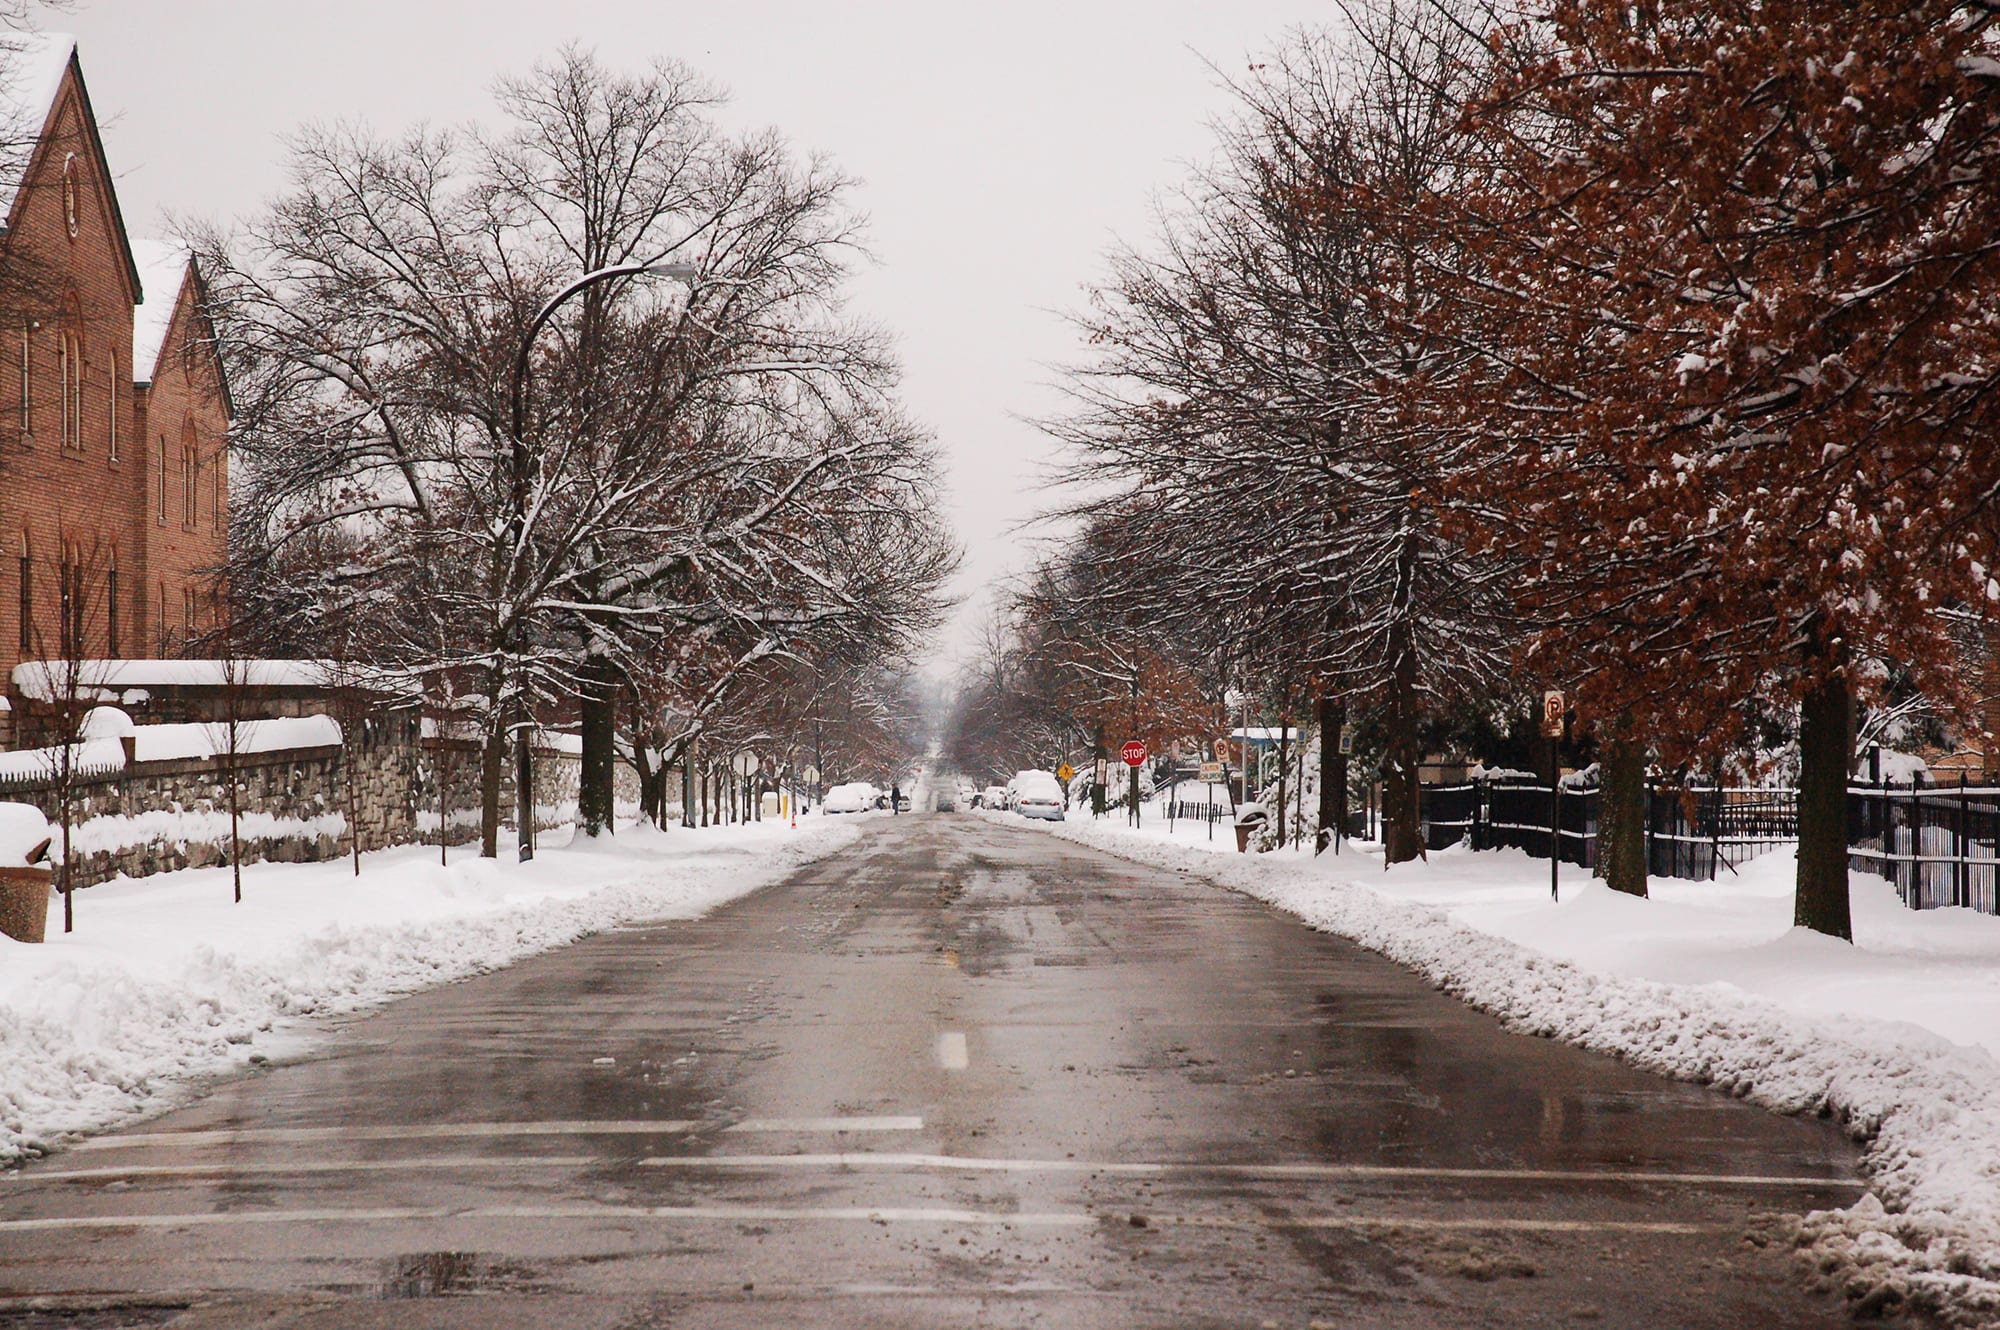 Compton Avenue in the snow.